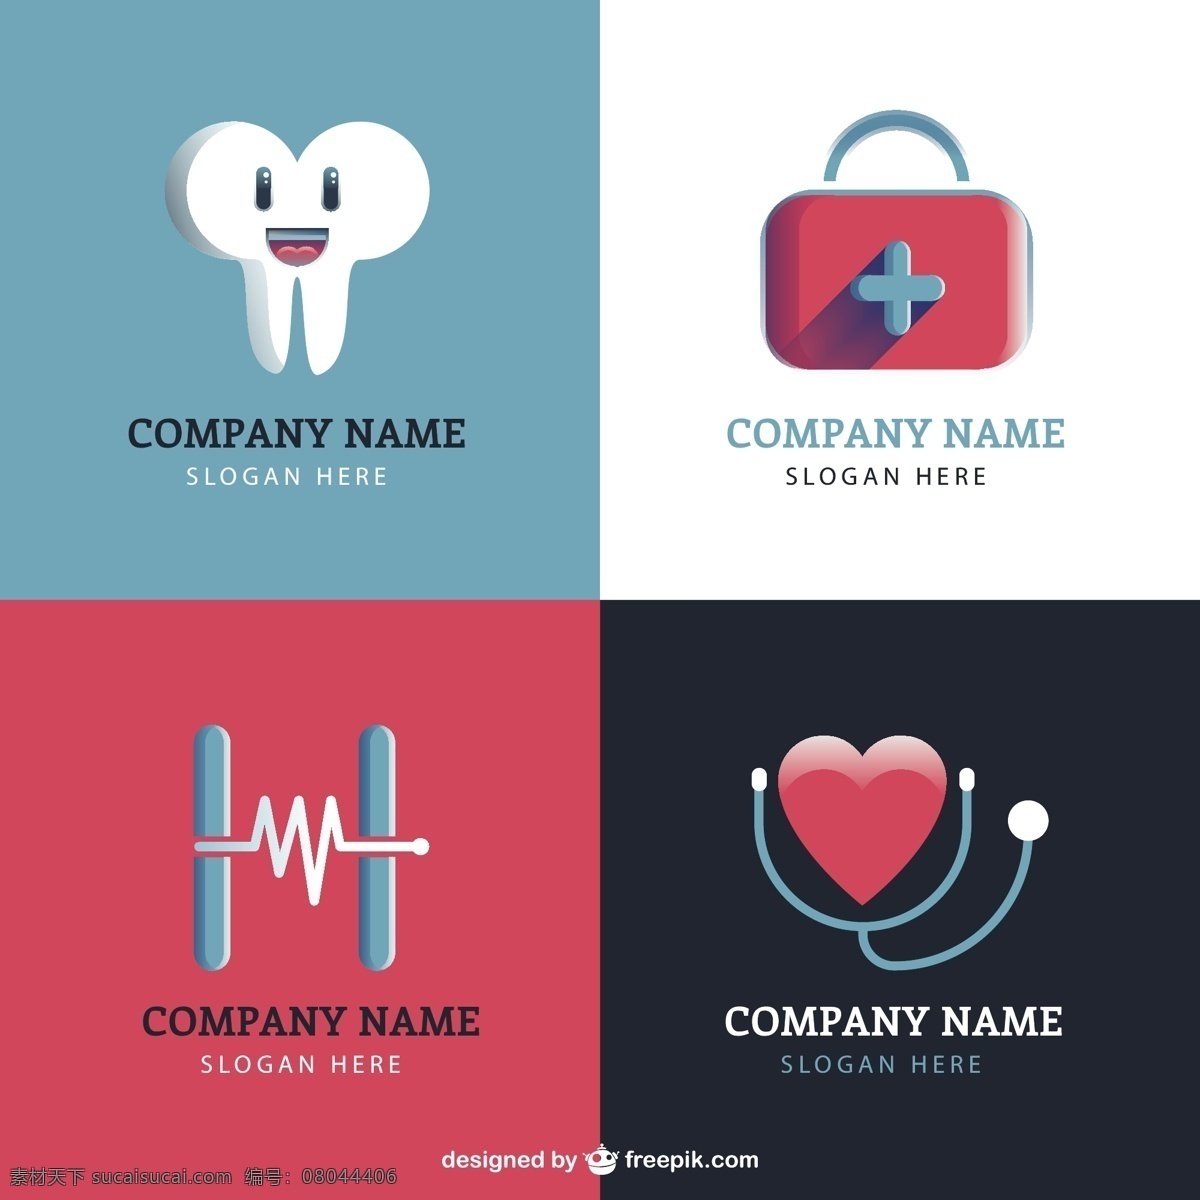 平面设计 中 临床 理性 标识 商业 心脏 医疗 健康 医生 平面 医院 企业 公司 品牌 牙齿 企业形象 象征 身份 白色